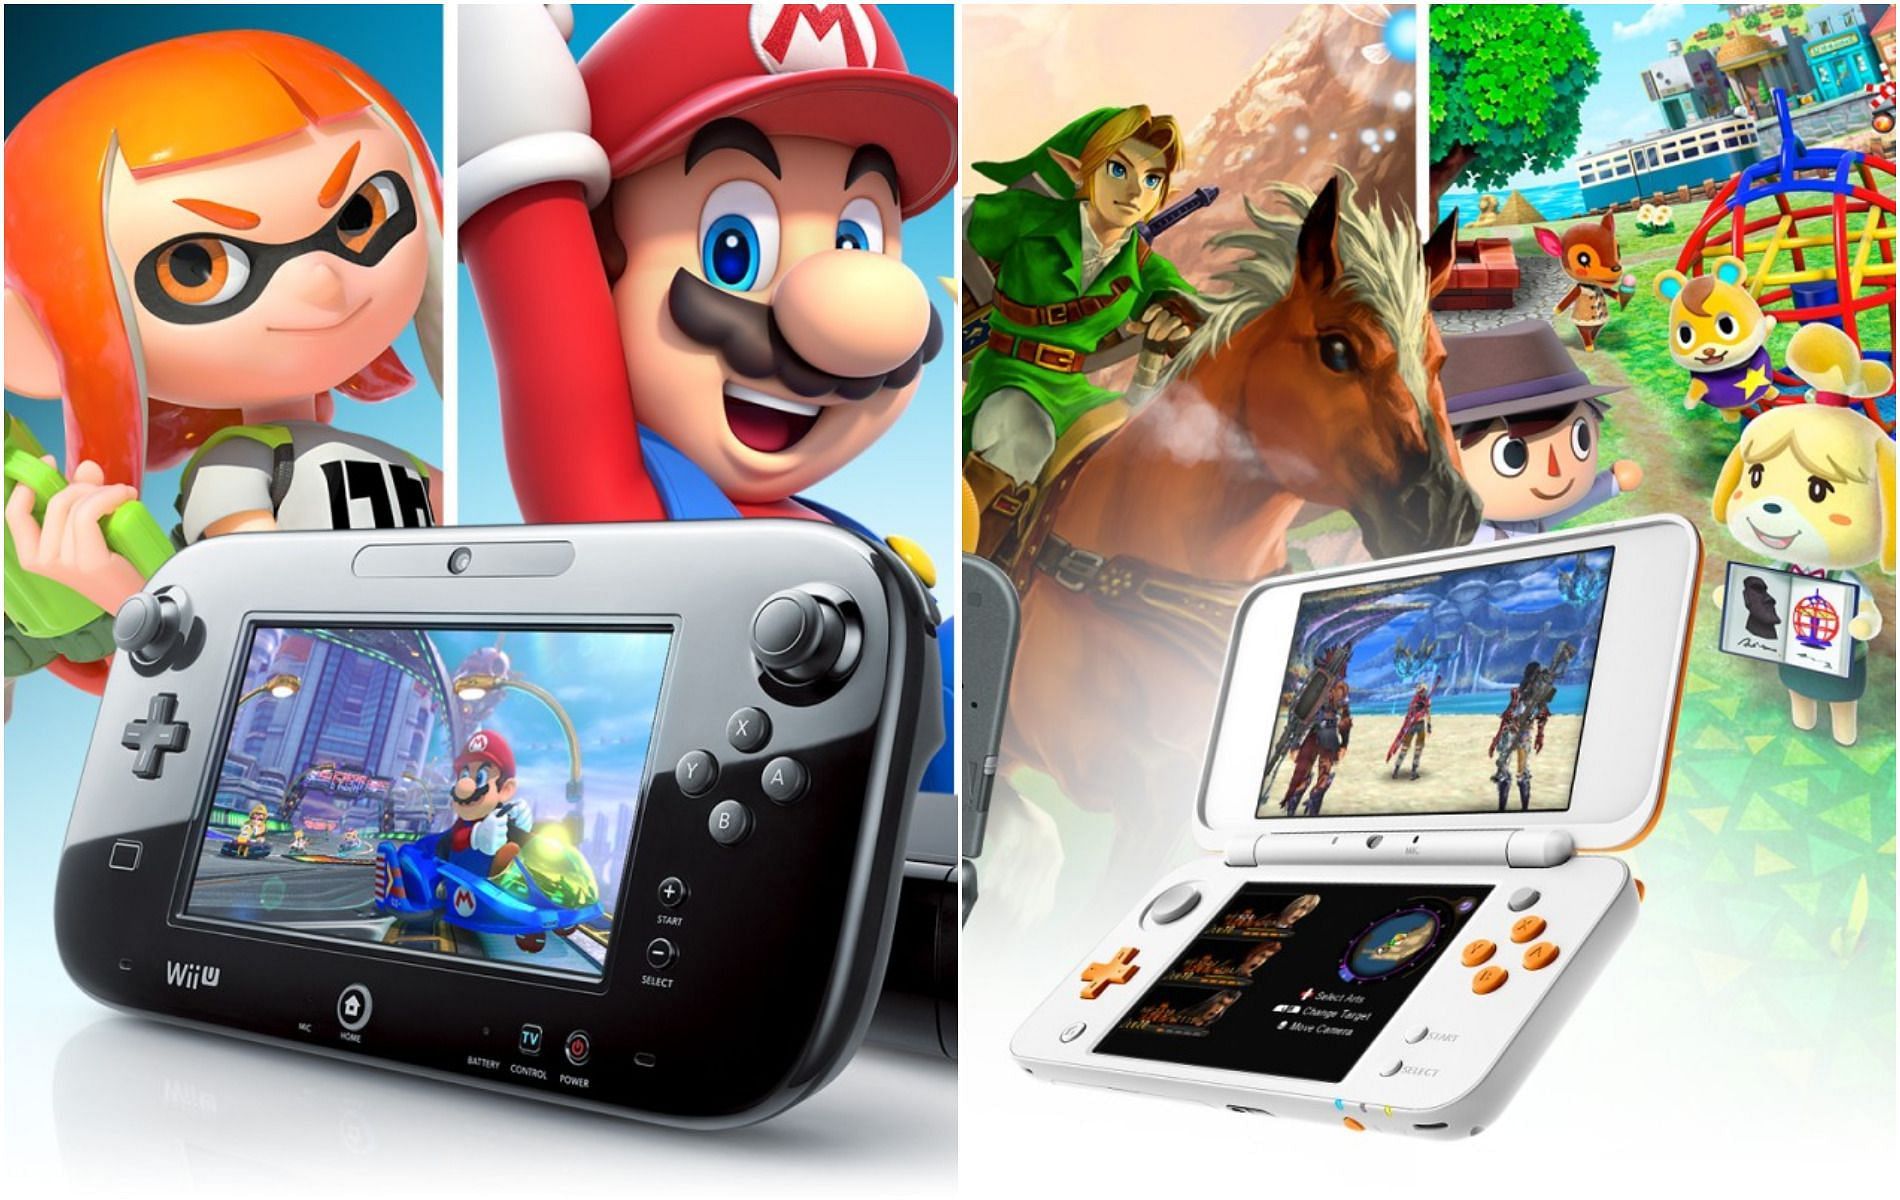 Wii U & Nintendo 3DS' Eshop Discontinuation – Compass News